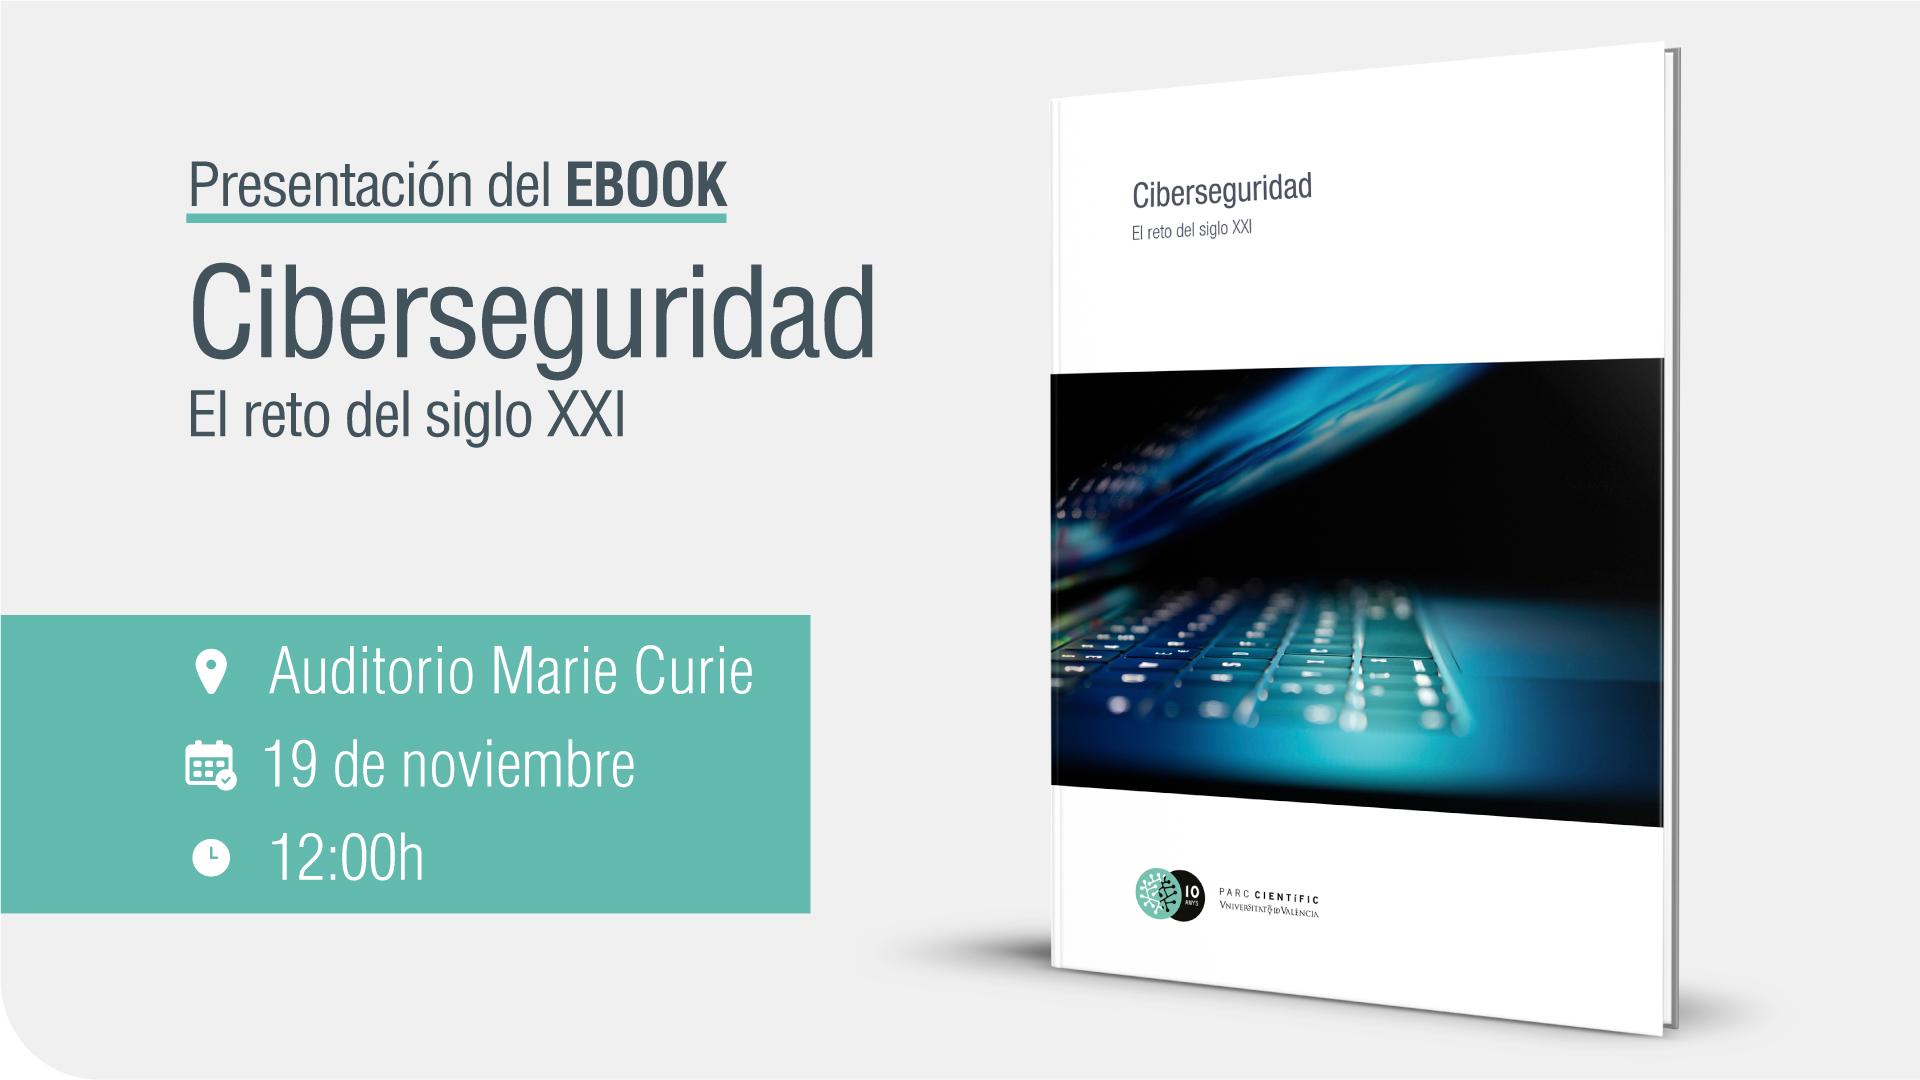 Ebook presentation: 'Ciberseguridad. El reto del siglo XXI'